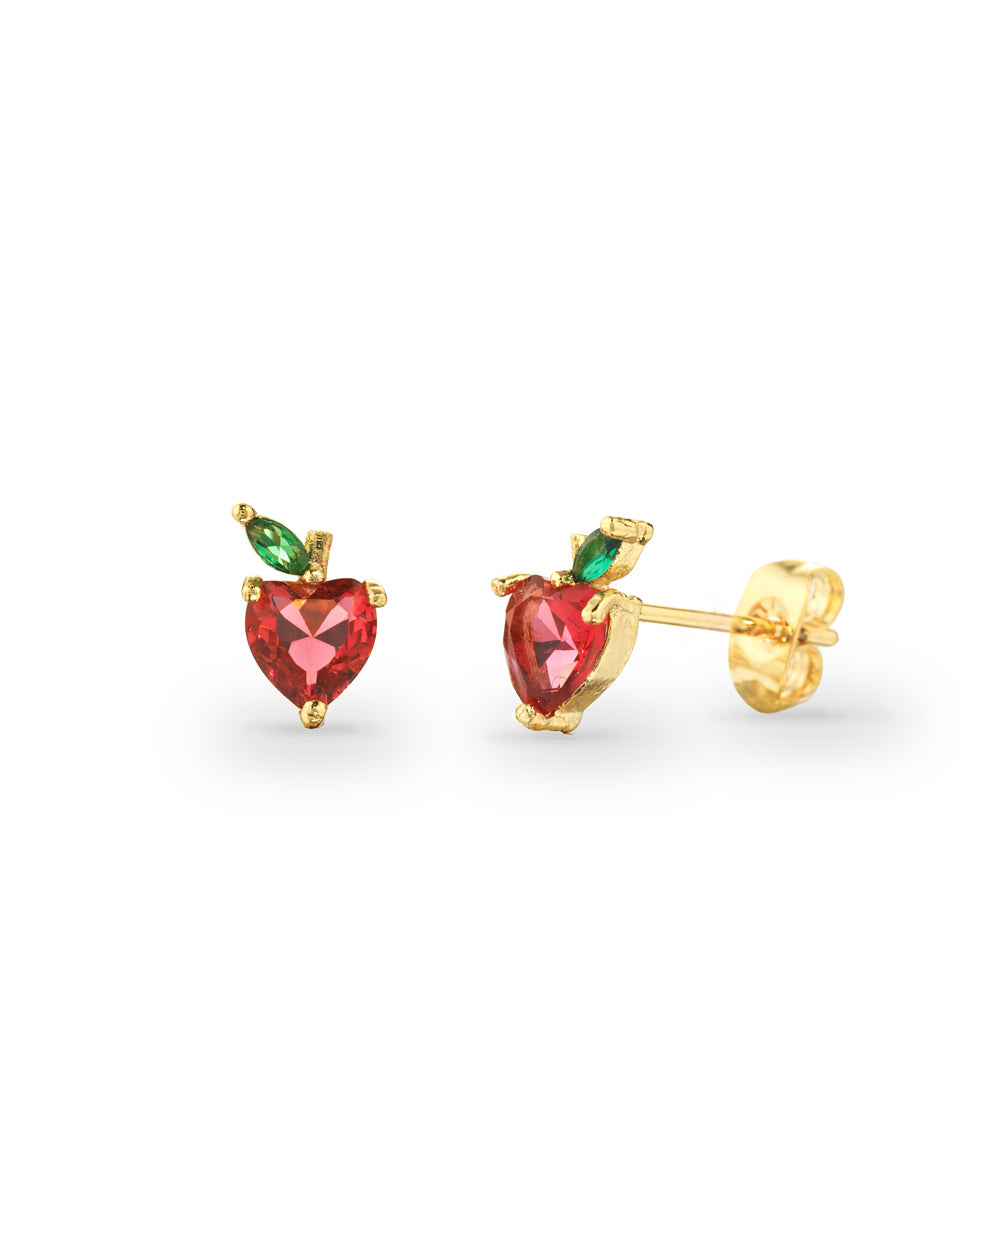 Lobe apple earrings